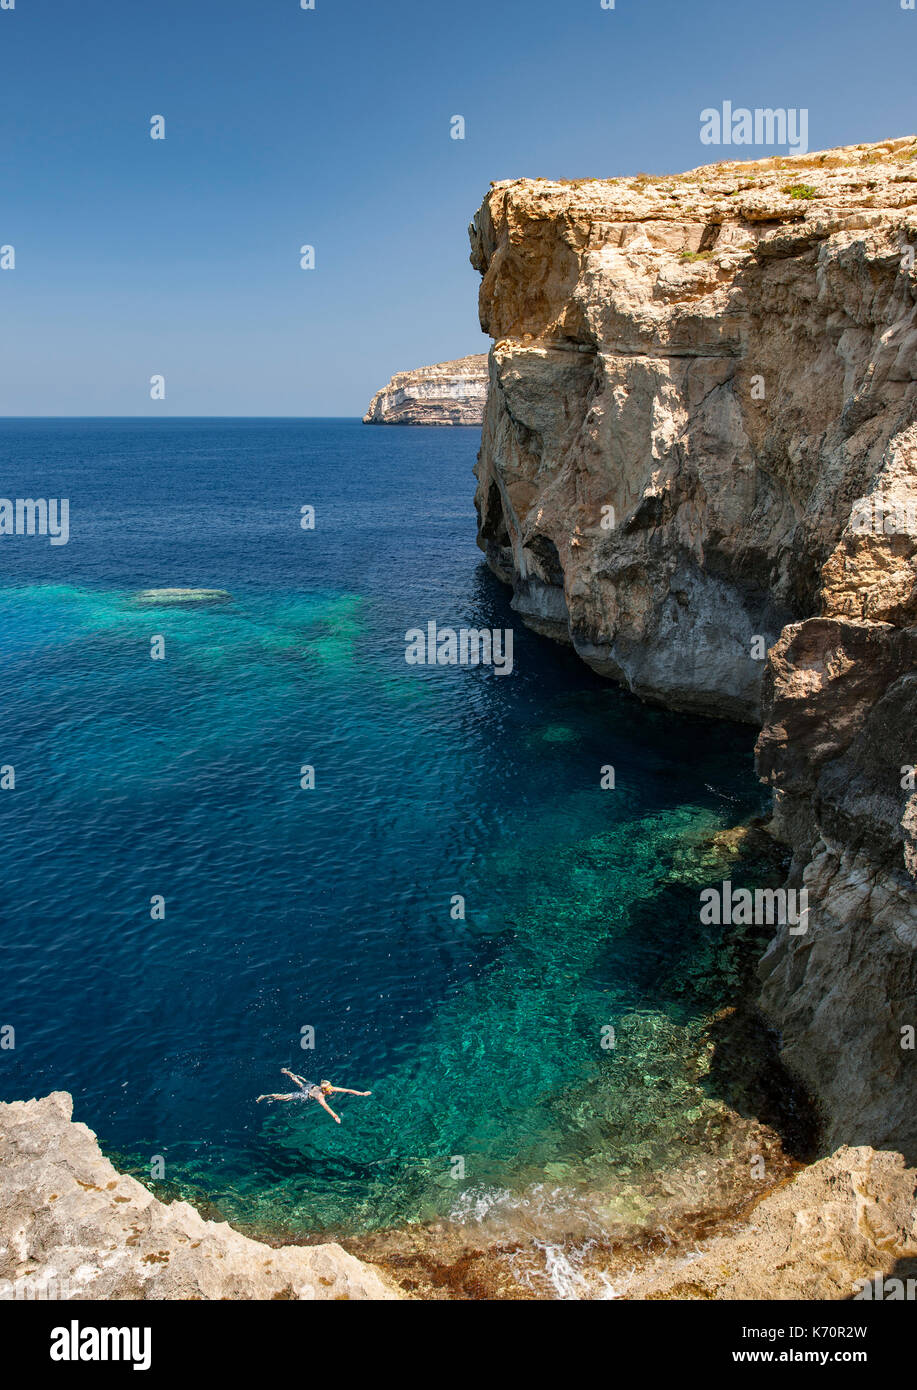 Ehemaliger Standort der Azure Window Rock arch in der Nähe von Dwejra Bay an der Küste der Insel Gozo in Malta. Stockfoto